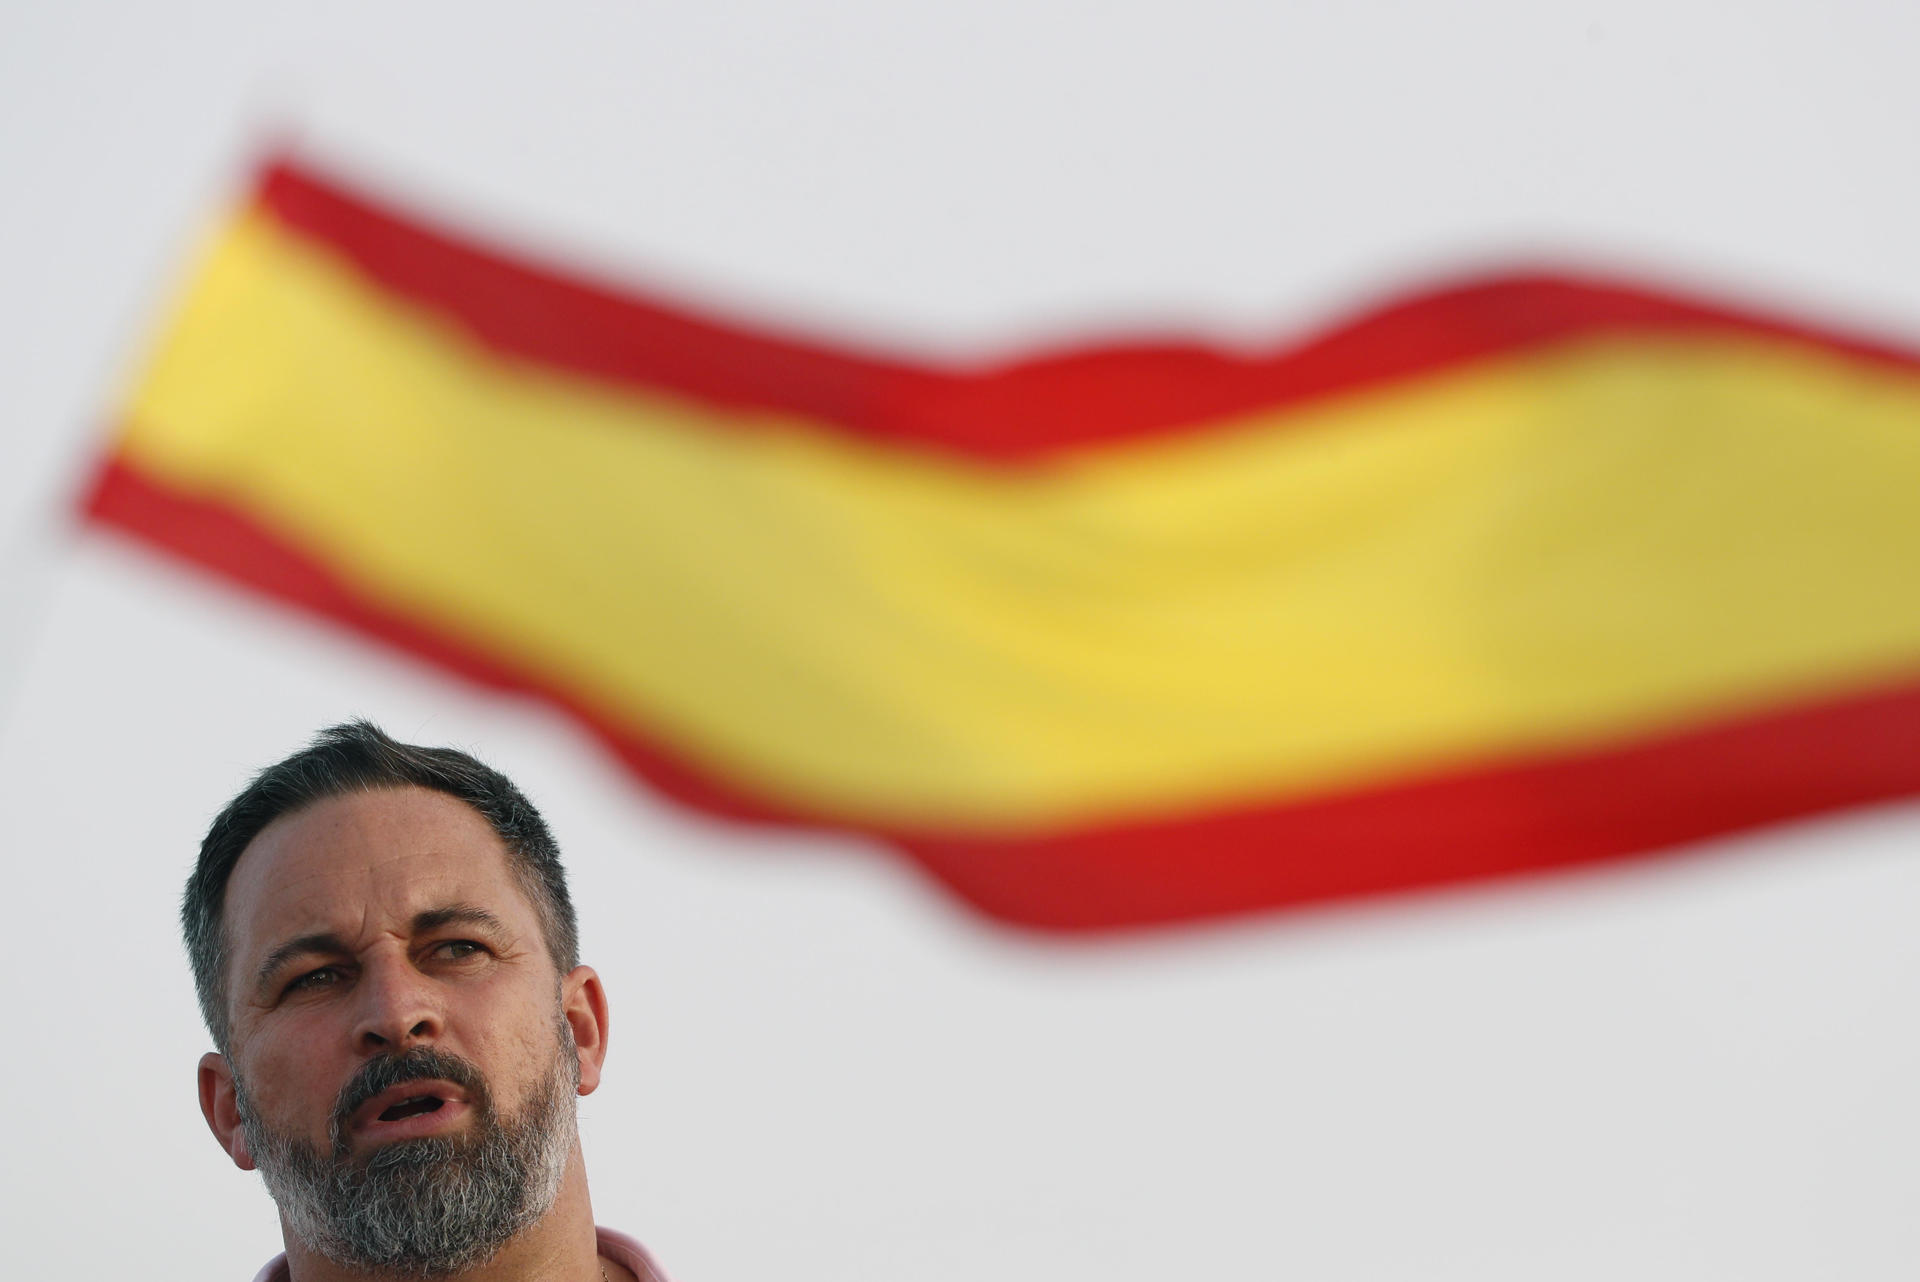 El líder de Vox, Santiago Abascal, interviene durante un acto de campaña previo a las elecciones generales del 23 de julio este martes, en Málaga. EFE/ Jorge Zapata